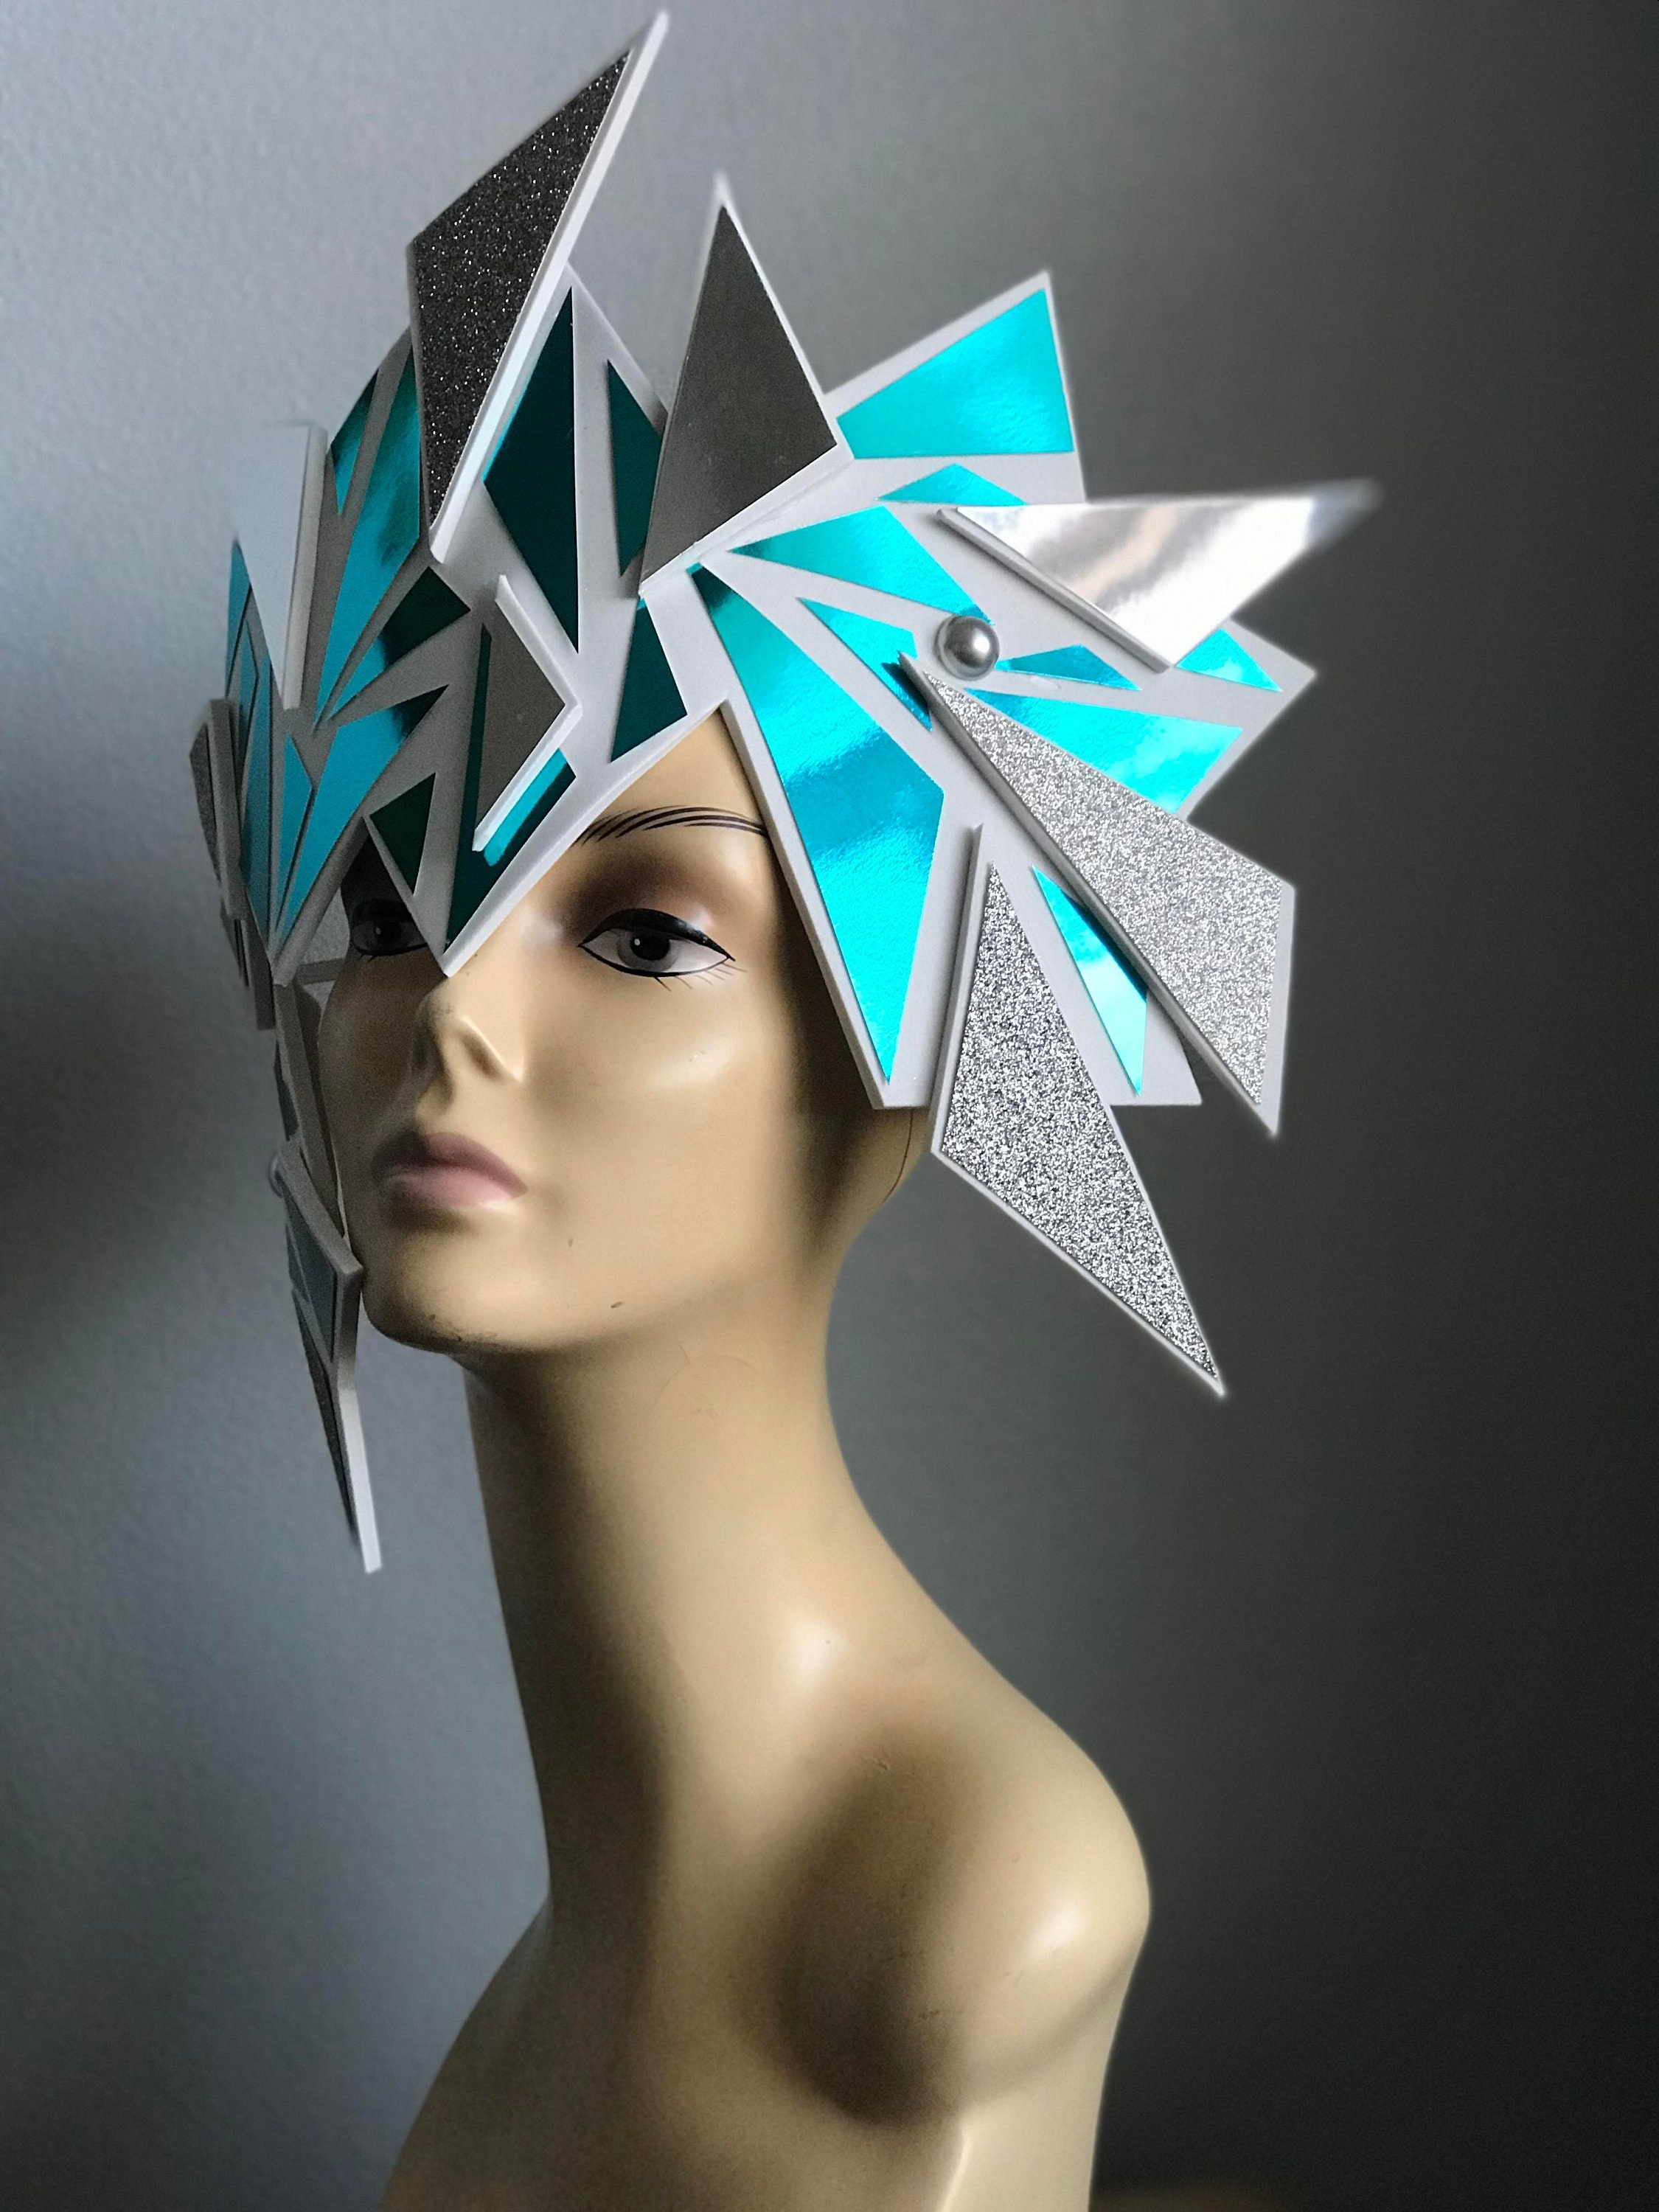 Futuristic headpiece